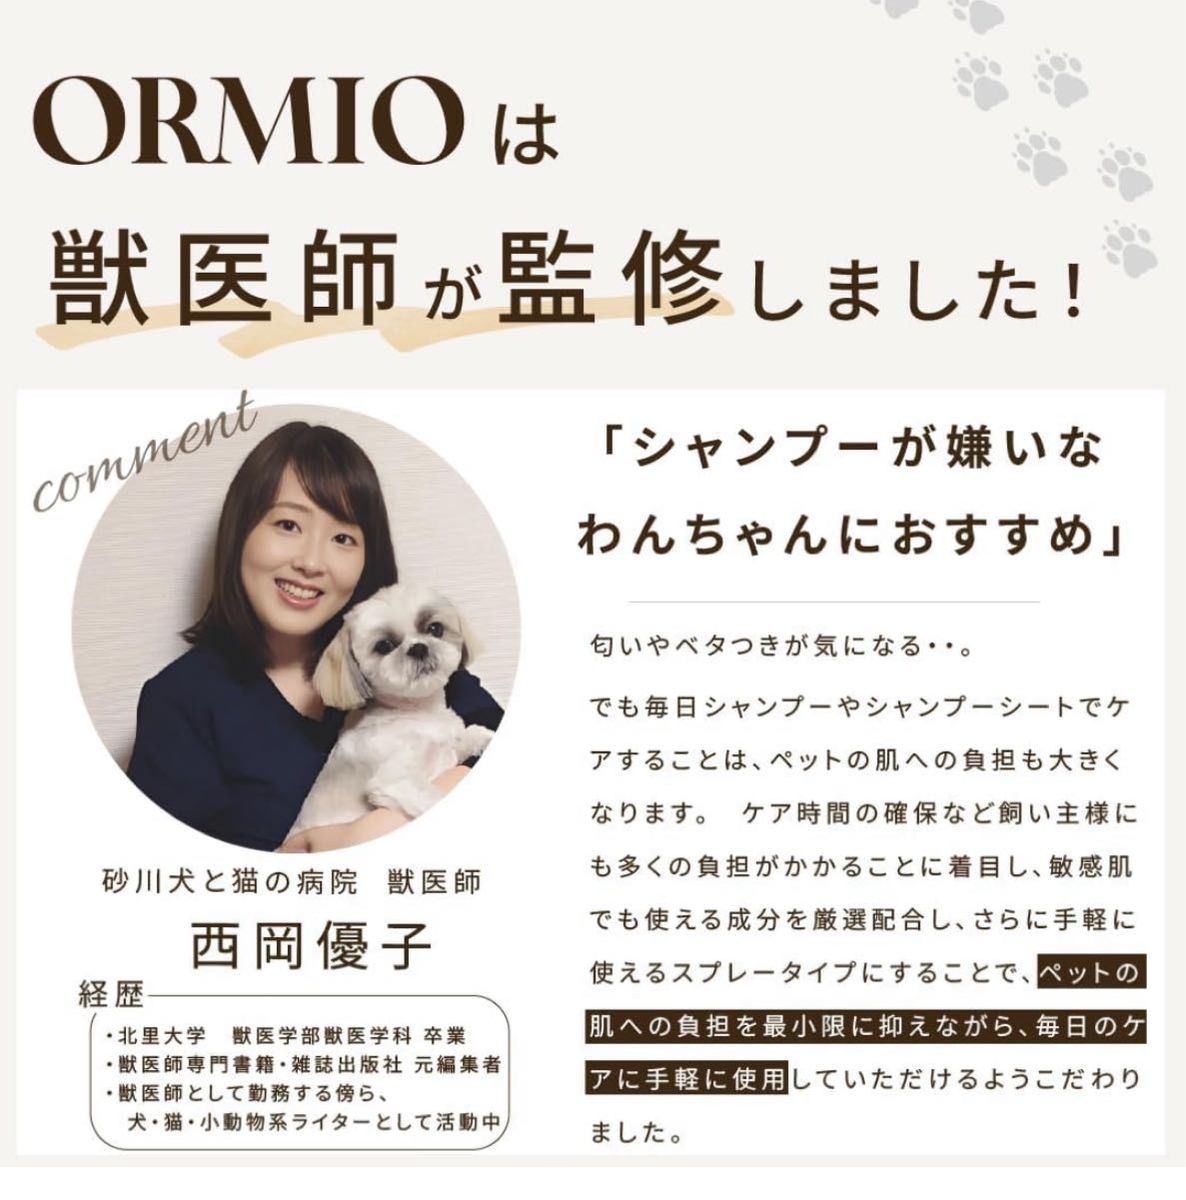 ORMIO 犬 猫 ドライシャンプー シャンプー 消臭スプレー 低刺激 国産 オーガニック グルーミングスプレー 300ml